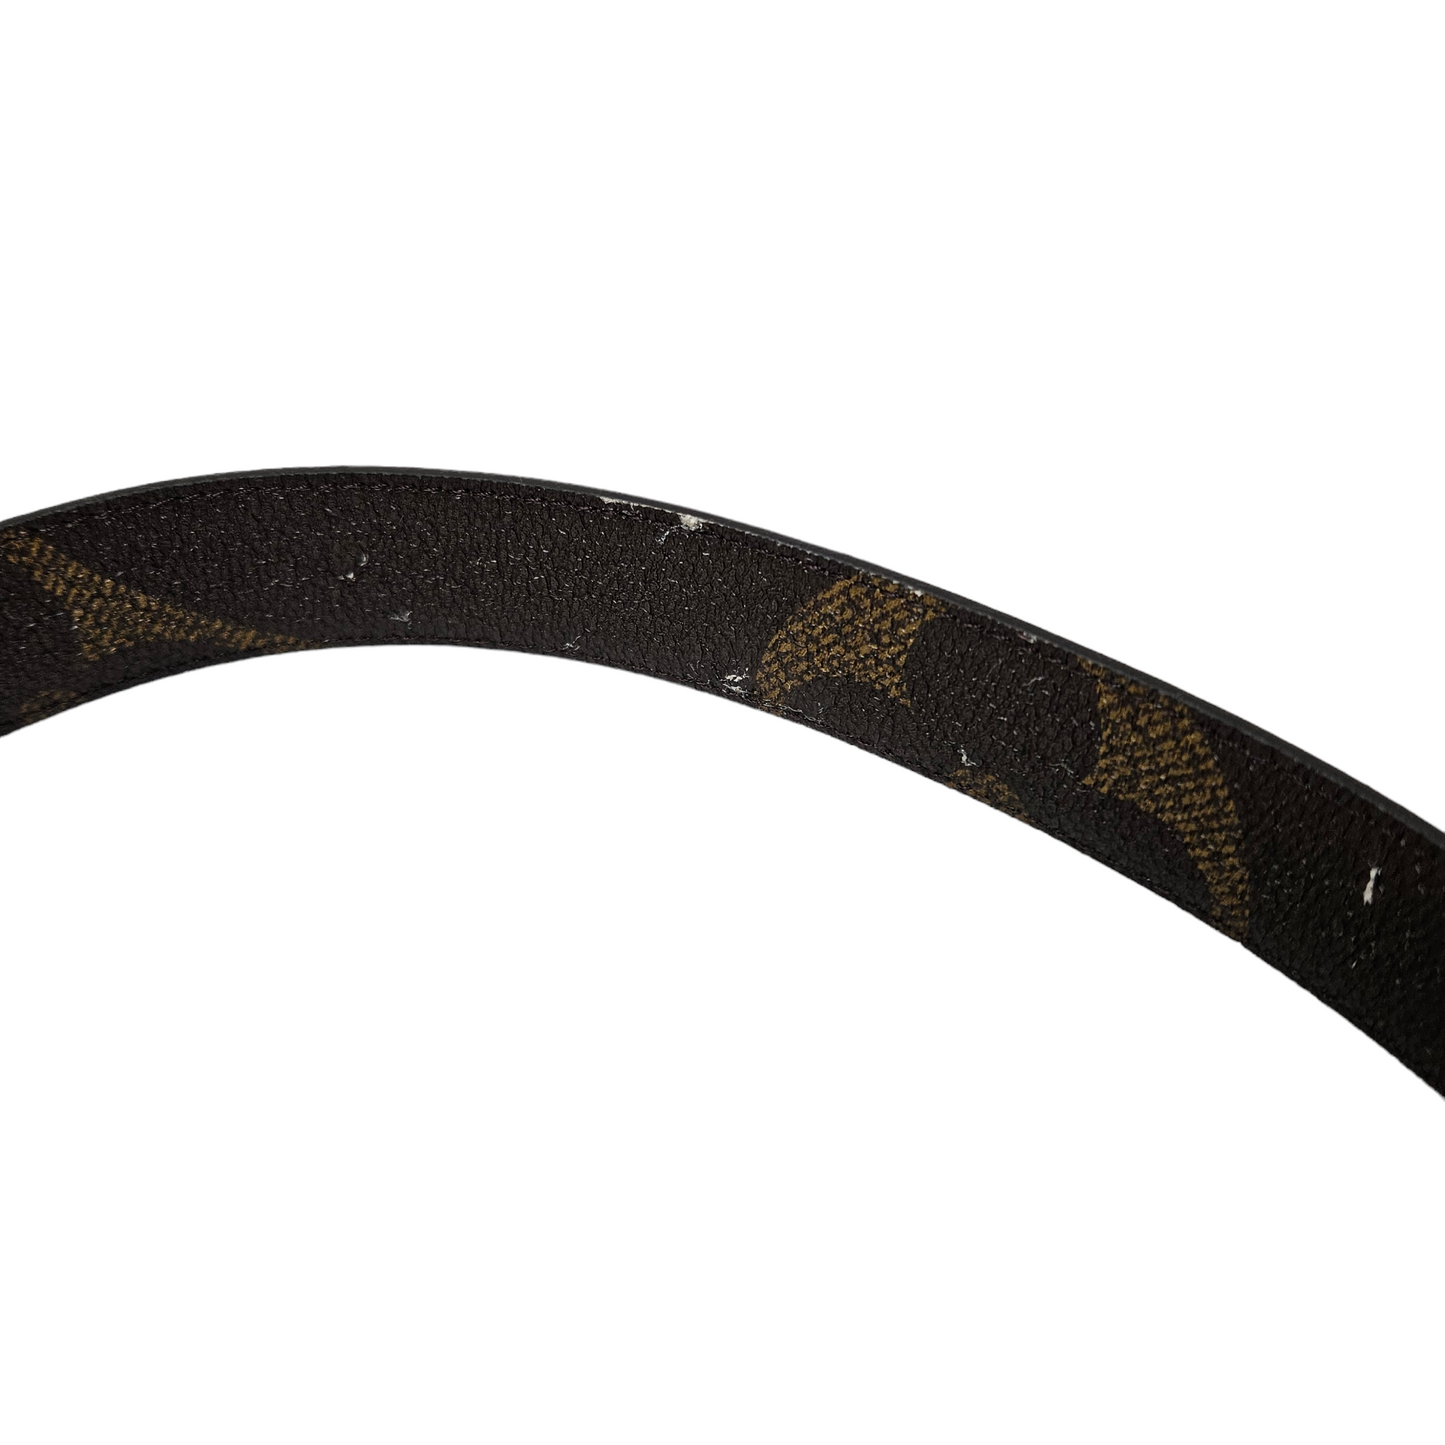 Louis Vuitton Gaint Monogram Reversible Initials Belt - Size 30inches